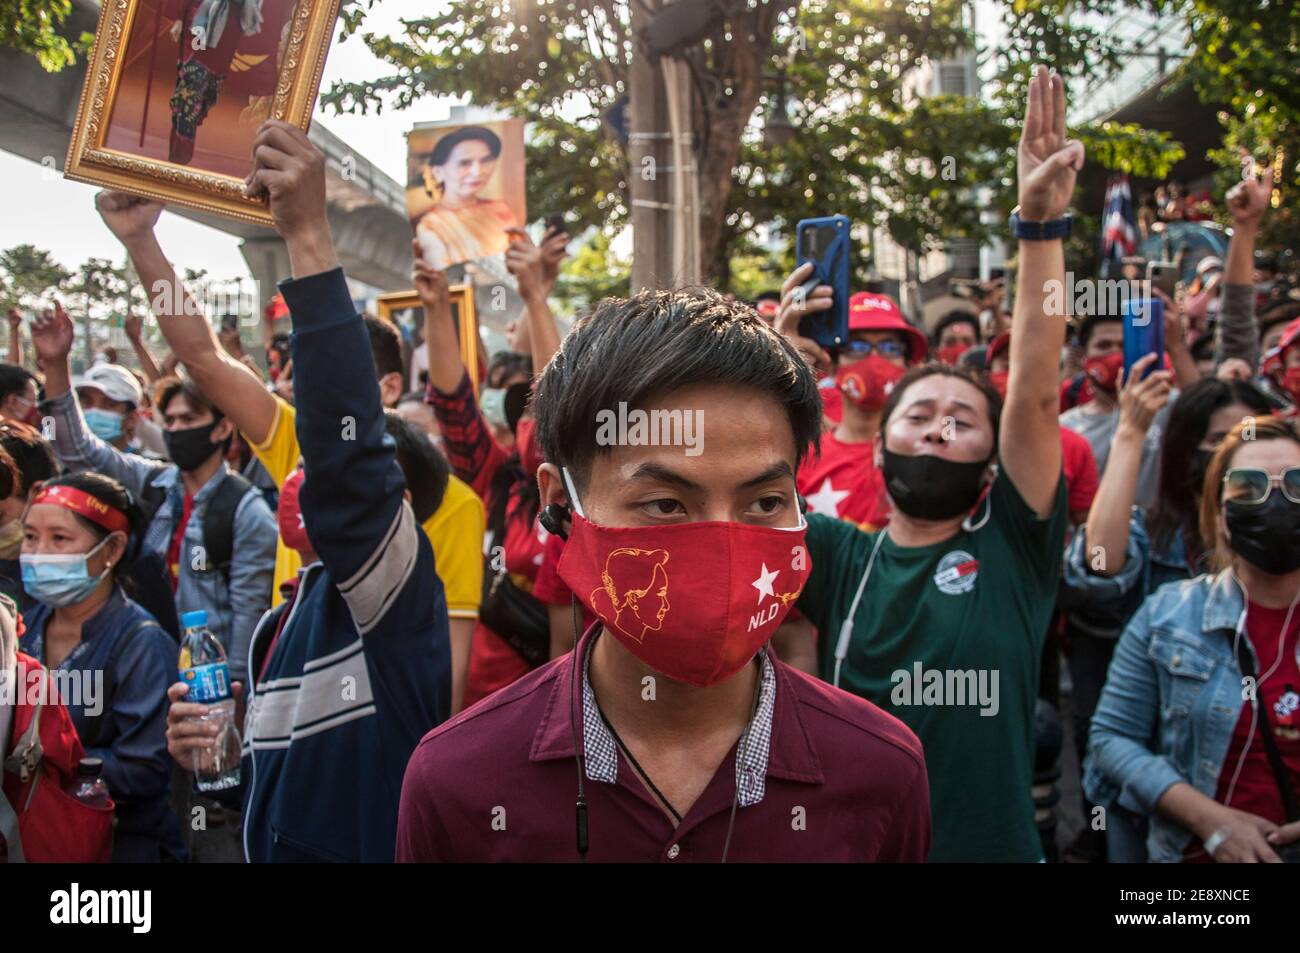 Il sostenitore della NLD è visto indossare un facemask della NLD durante la dimostrazione.i sostenitori della Lega nazionale per la democrazia (NLD) e i manifestanti anti anti-colpo thailandesi si radunano fuori dall'ambasciata del Myanmar dopo che l'esercito del Myanmar ha preso il potere da un governo civile democraticamente eletto e ha arrestato il suo leader Aung San Suu Kyi. La polizia tailandese in rivolta ha poi disperso i dimostranti. Foto Stock